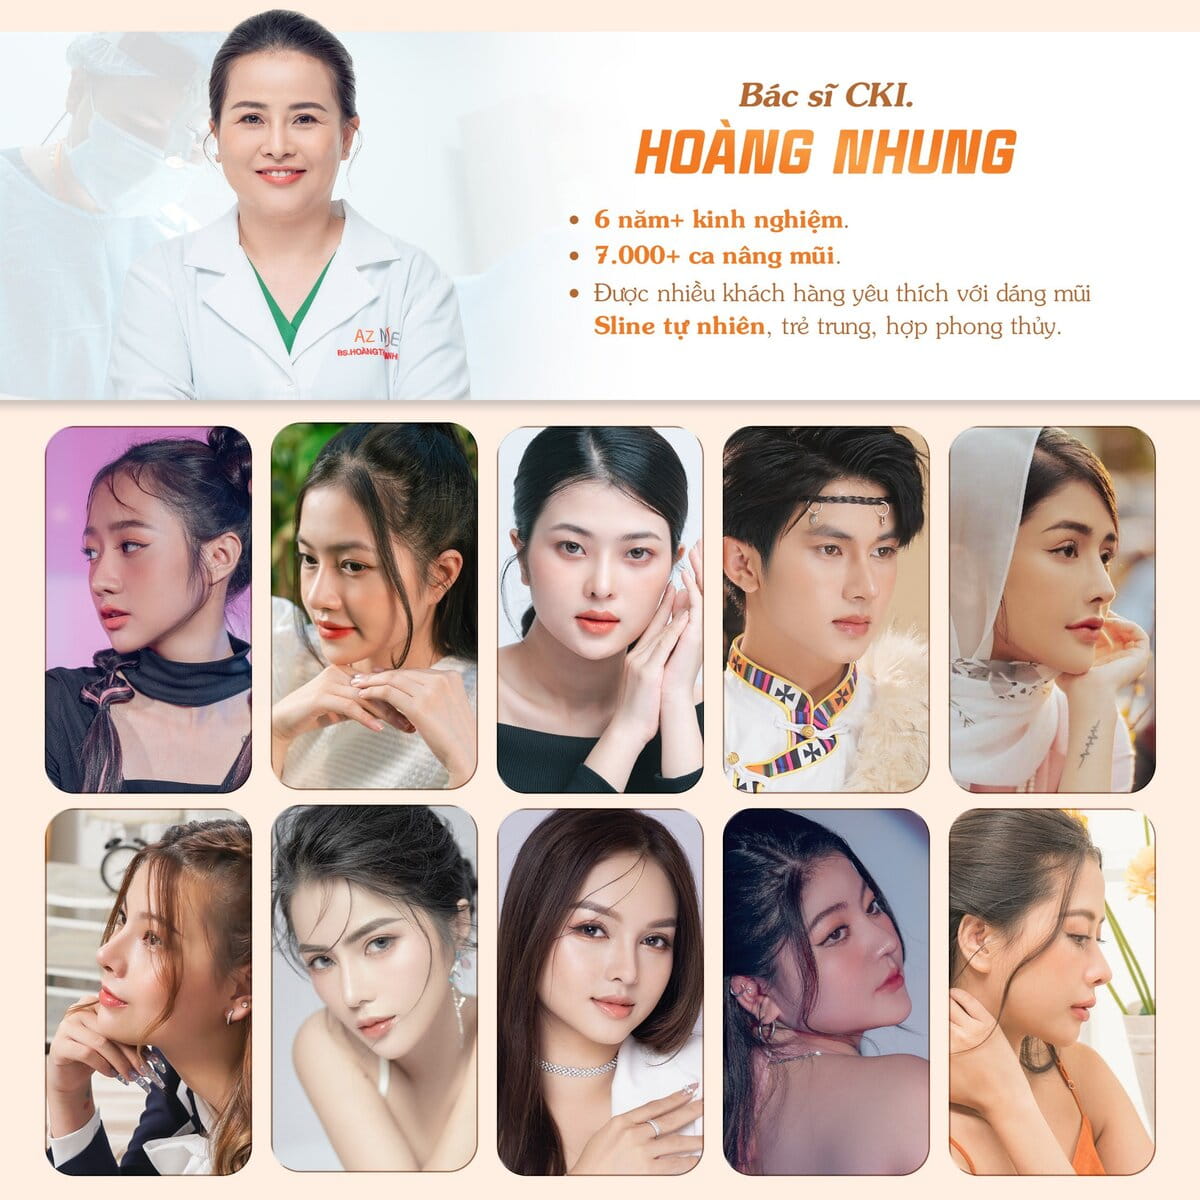 Bác sĩ CKI. Hoàng Nhung chuyên về dáng mũi Sline tự nhiên và giữ lại nét trẻ trung cho khuôn mặt của khách hàng